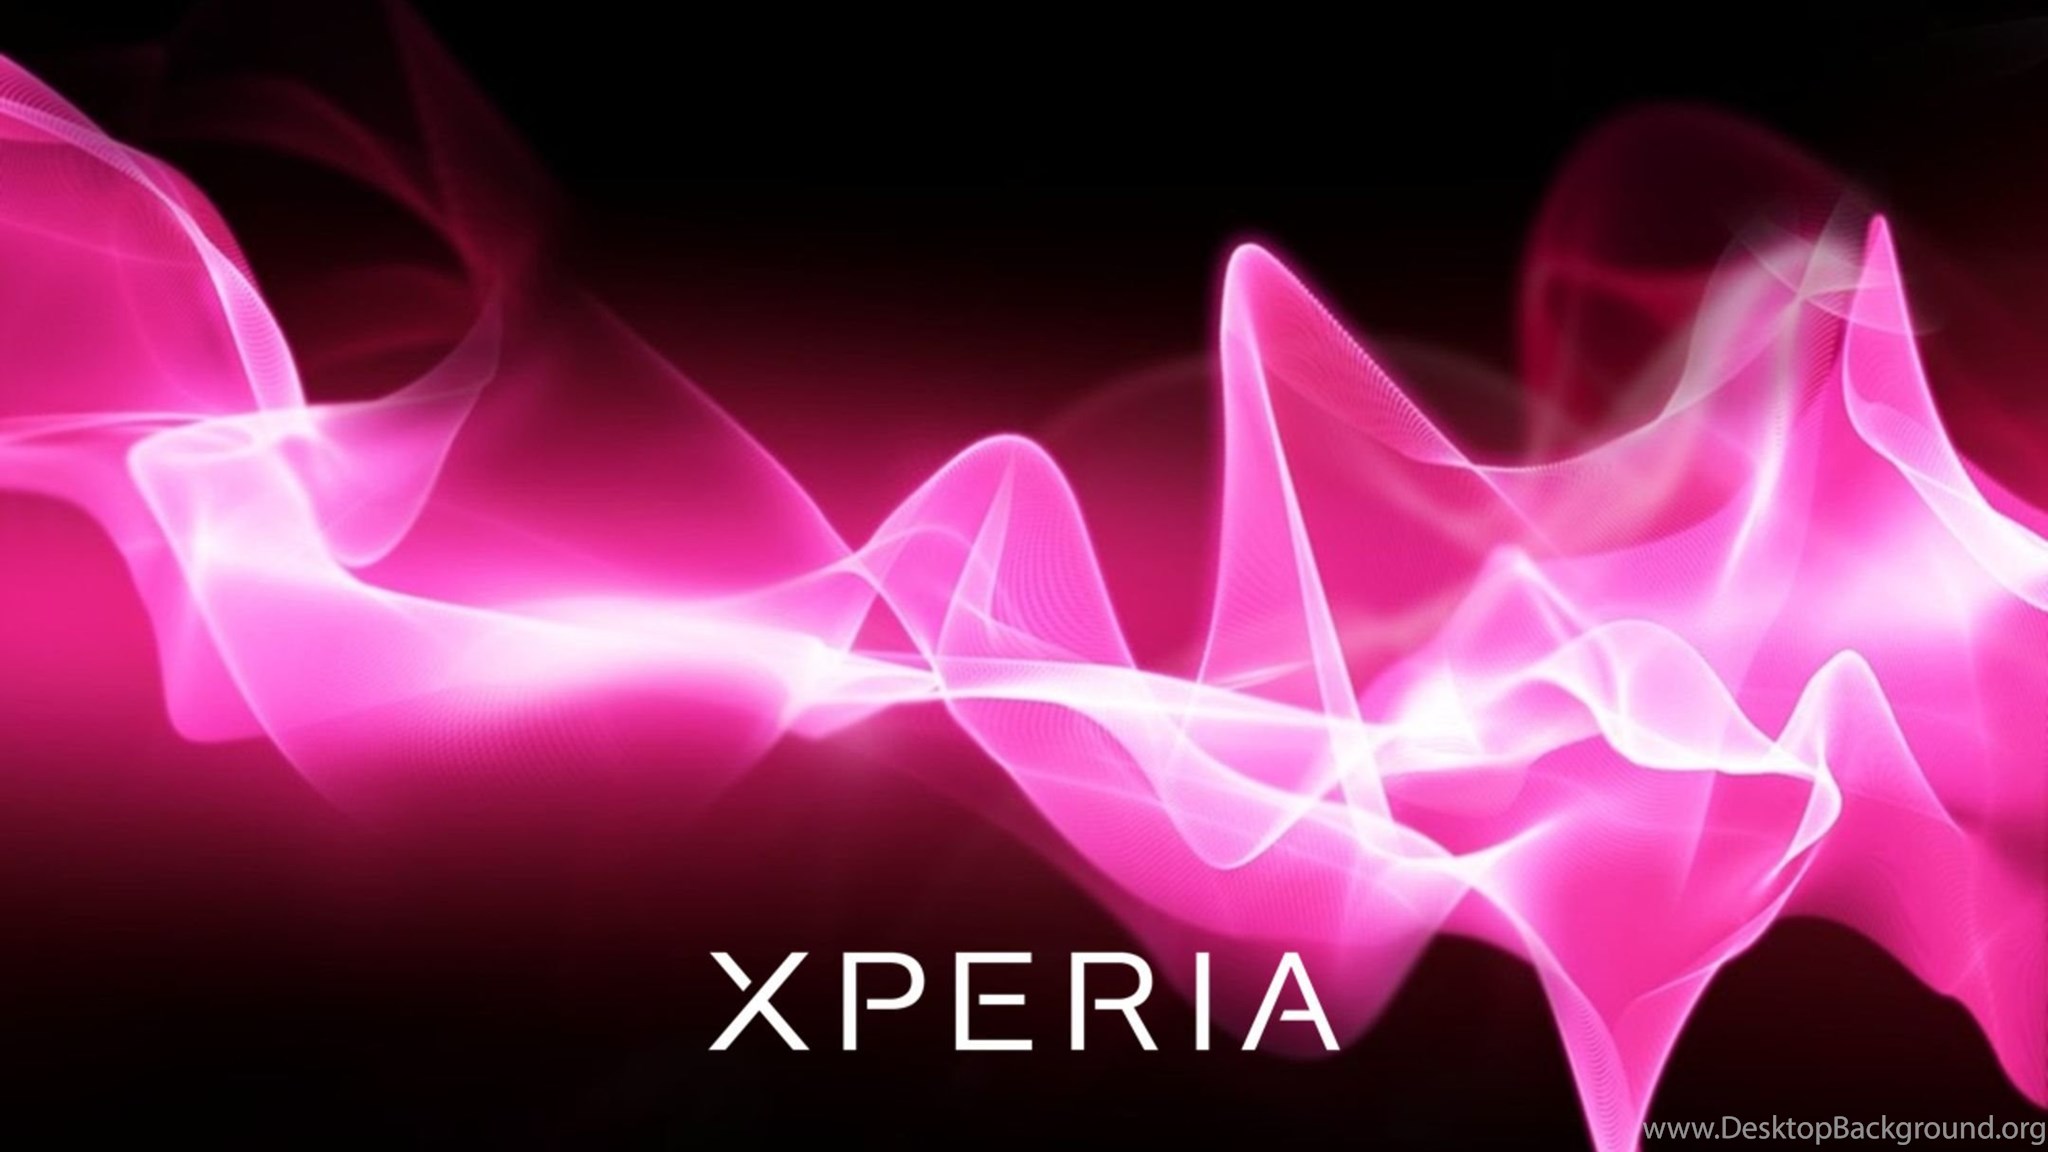 Обои sony xperia. Фоновые рисунки Sony Xperia. Розовое свечение. Обои на телефон Sony Xperia.